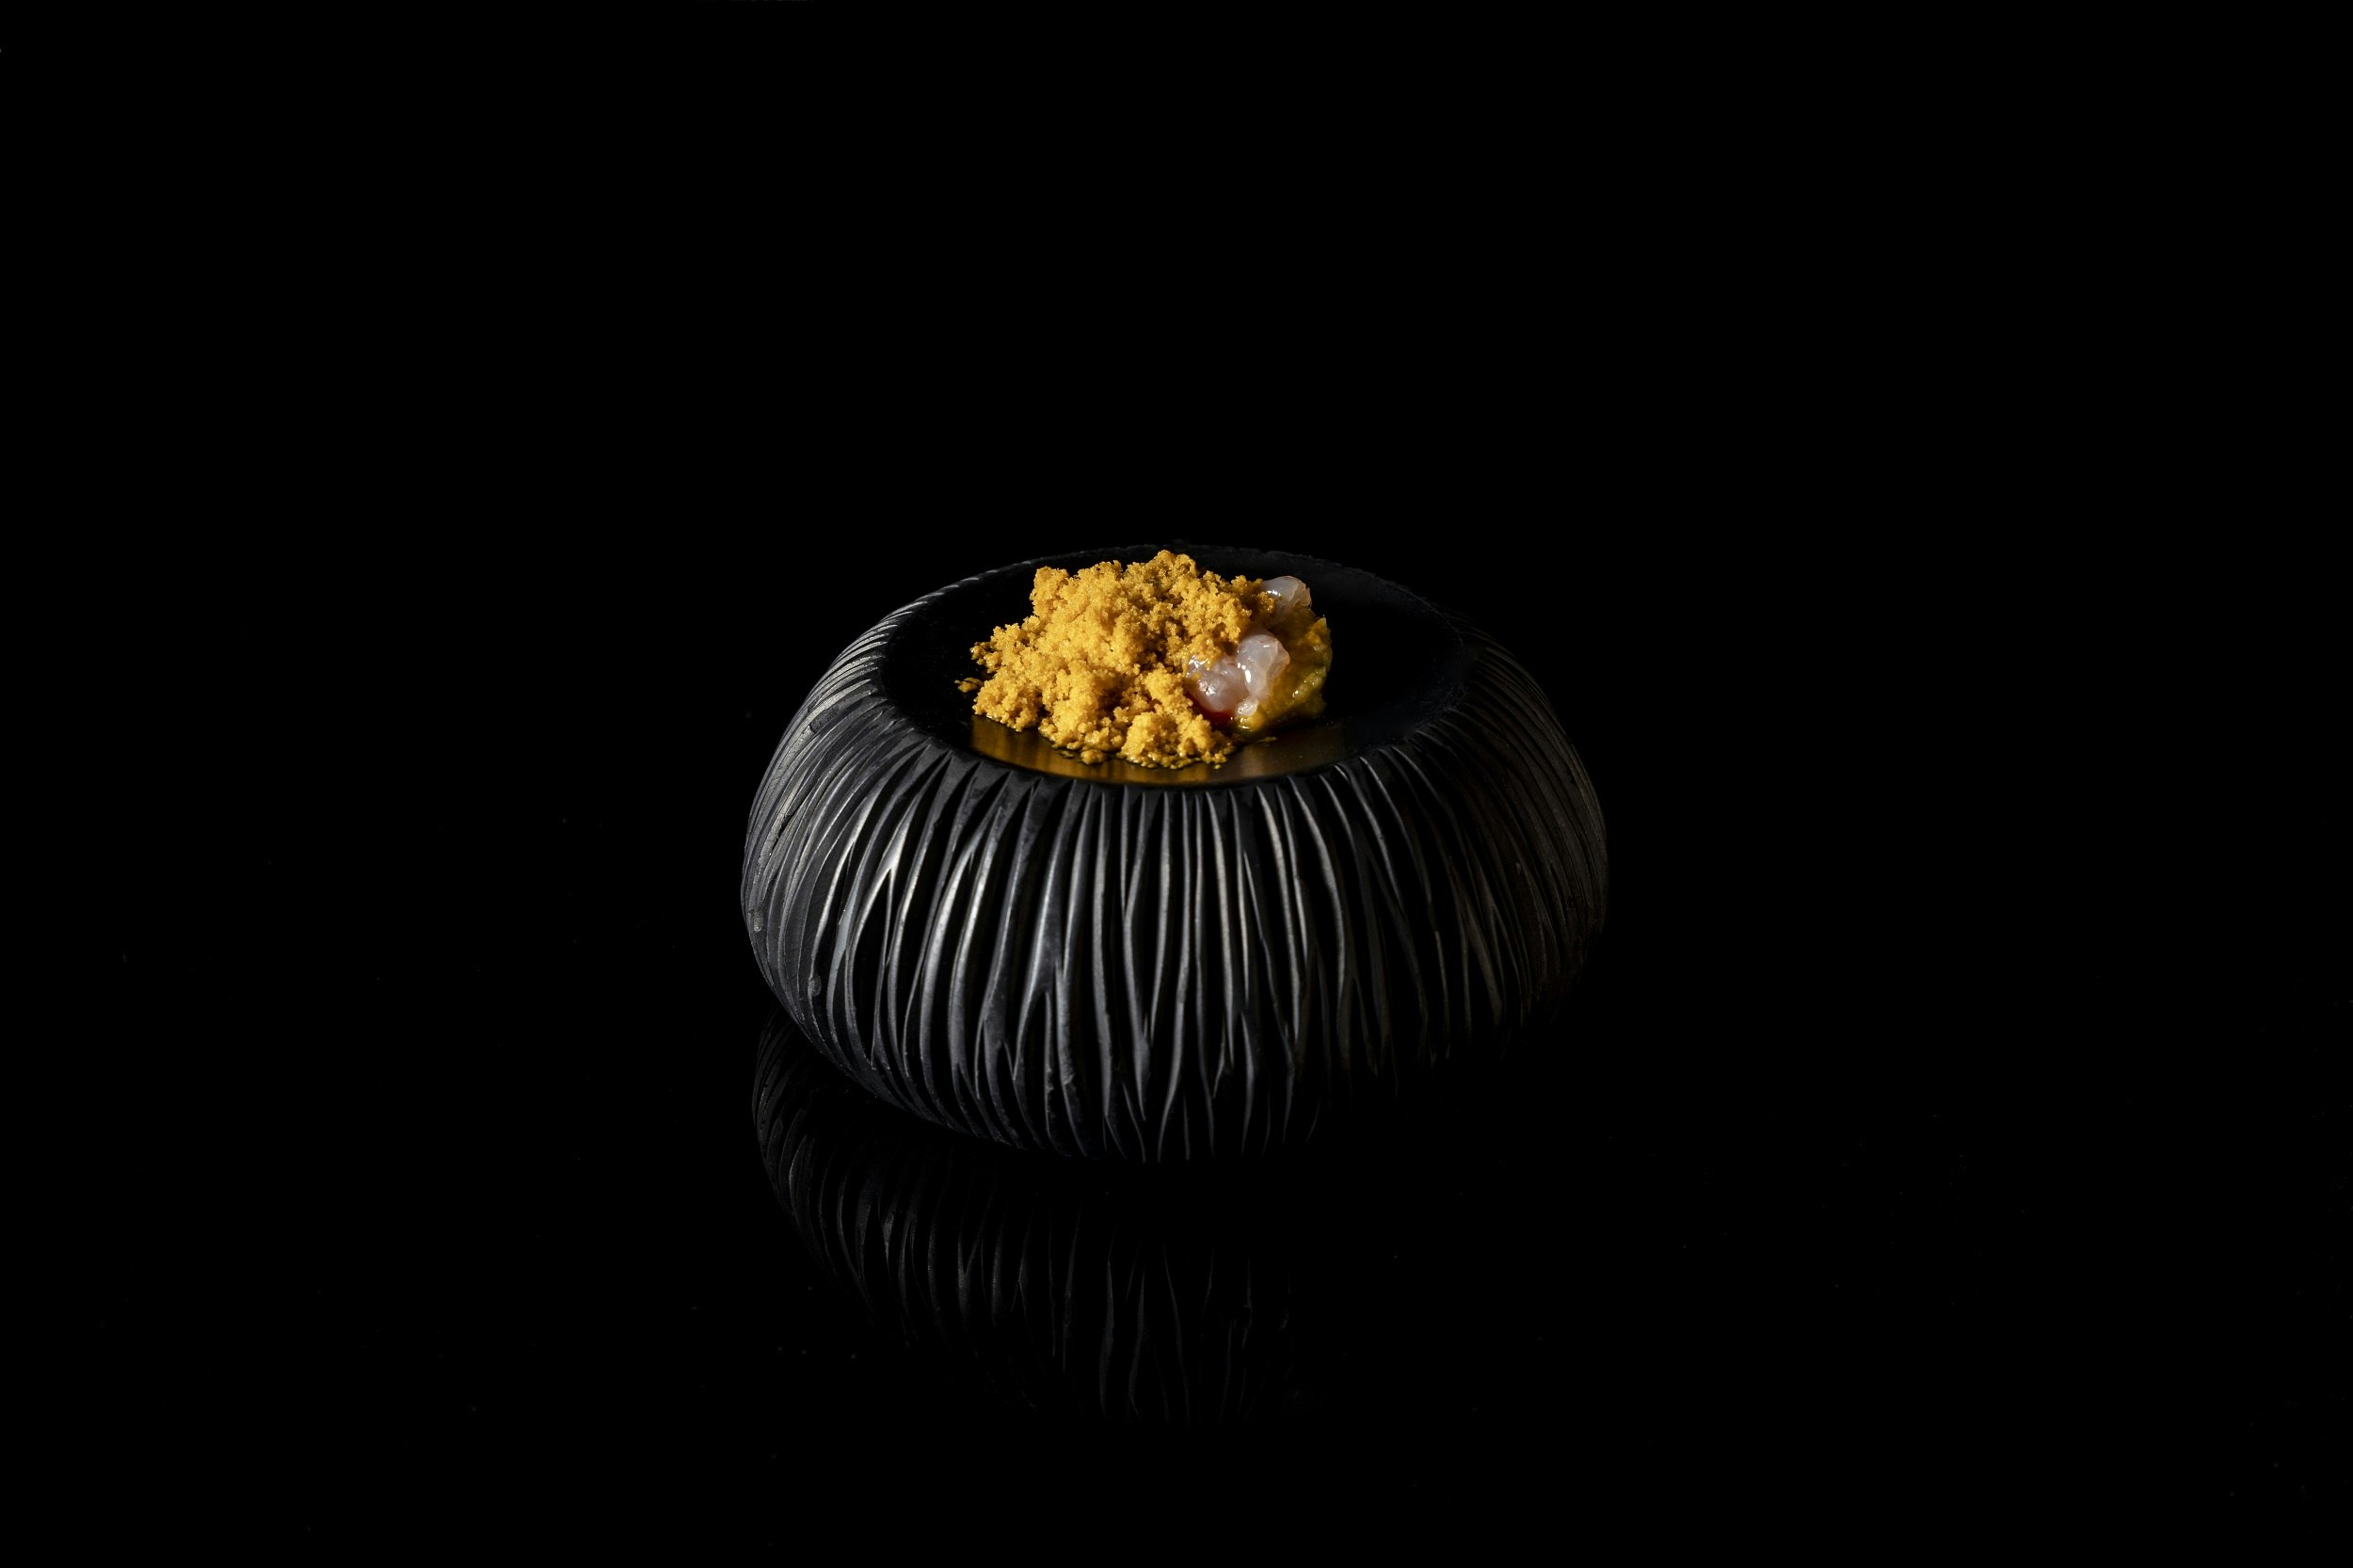 Ett tjockt svart fat, med tillhuggna sidor som liknar sidorna på en vulkan, rymmer en delikat servering av en gurkmejafärgad maträtt.